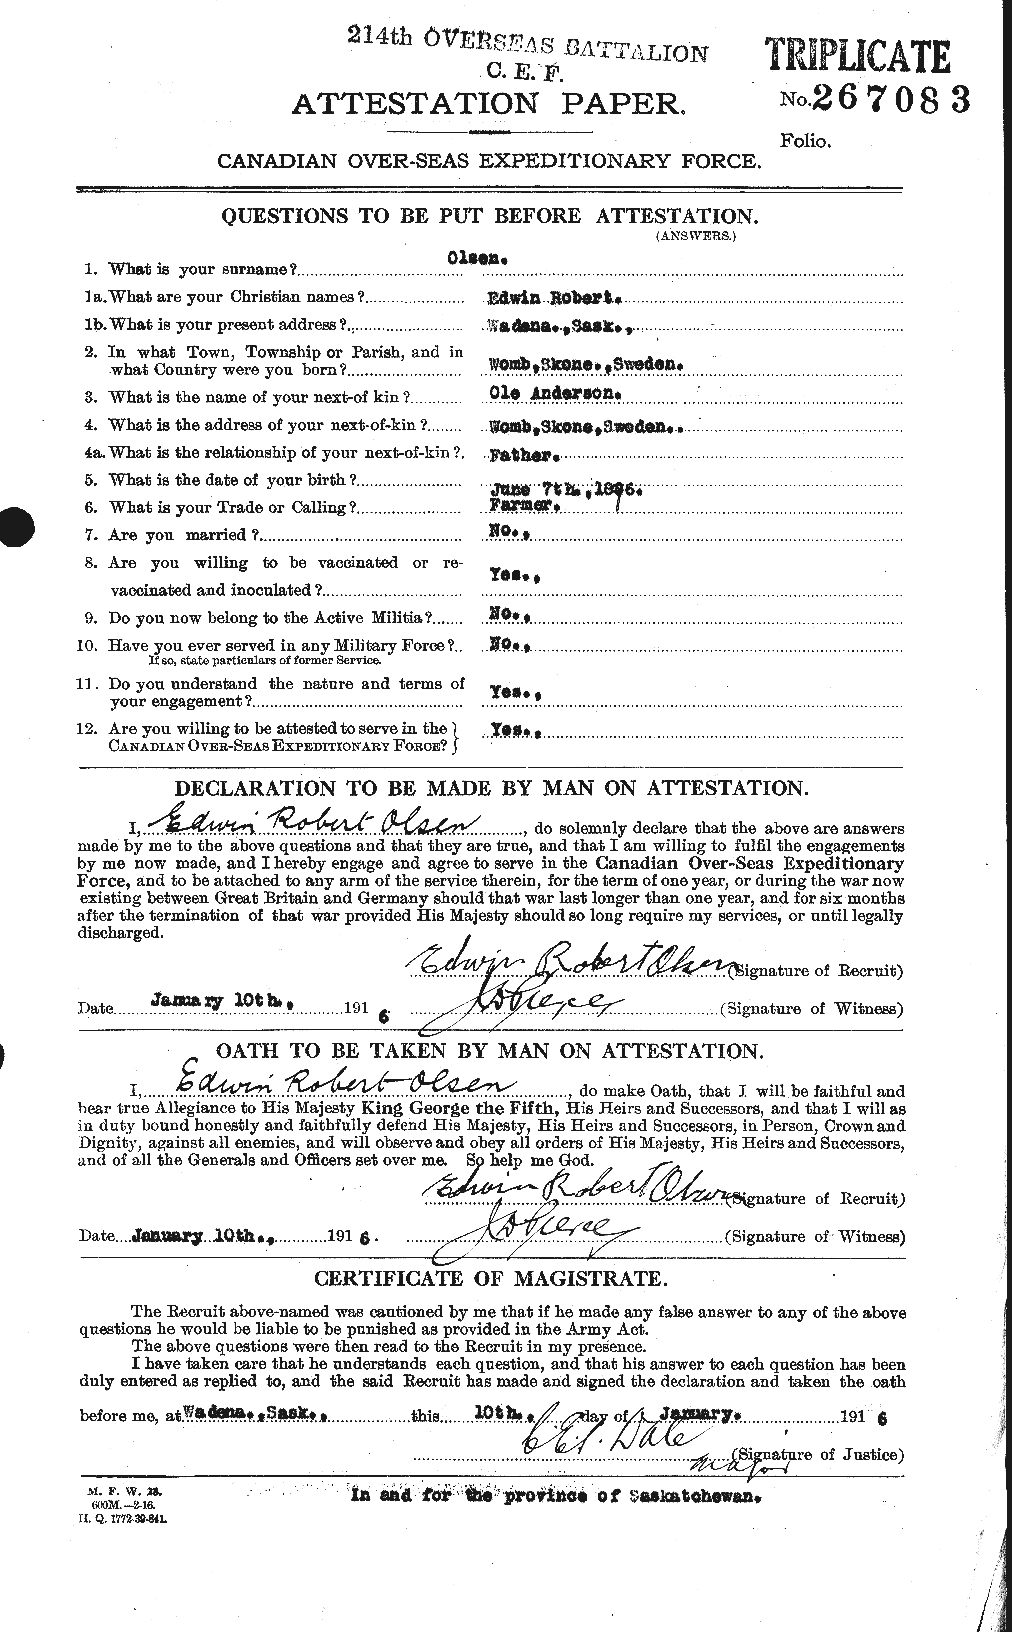 Dossiers du Personnel de la Première Guerre mondiale - CEC 555774a